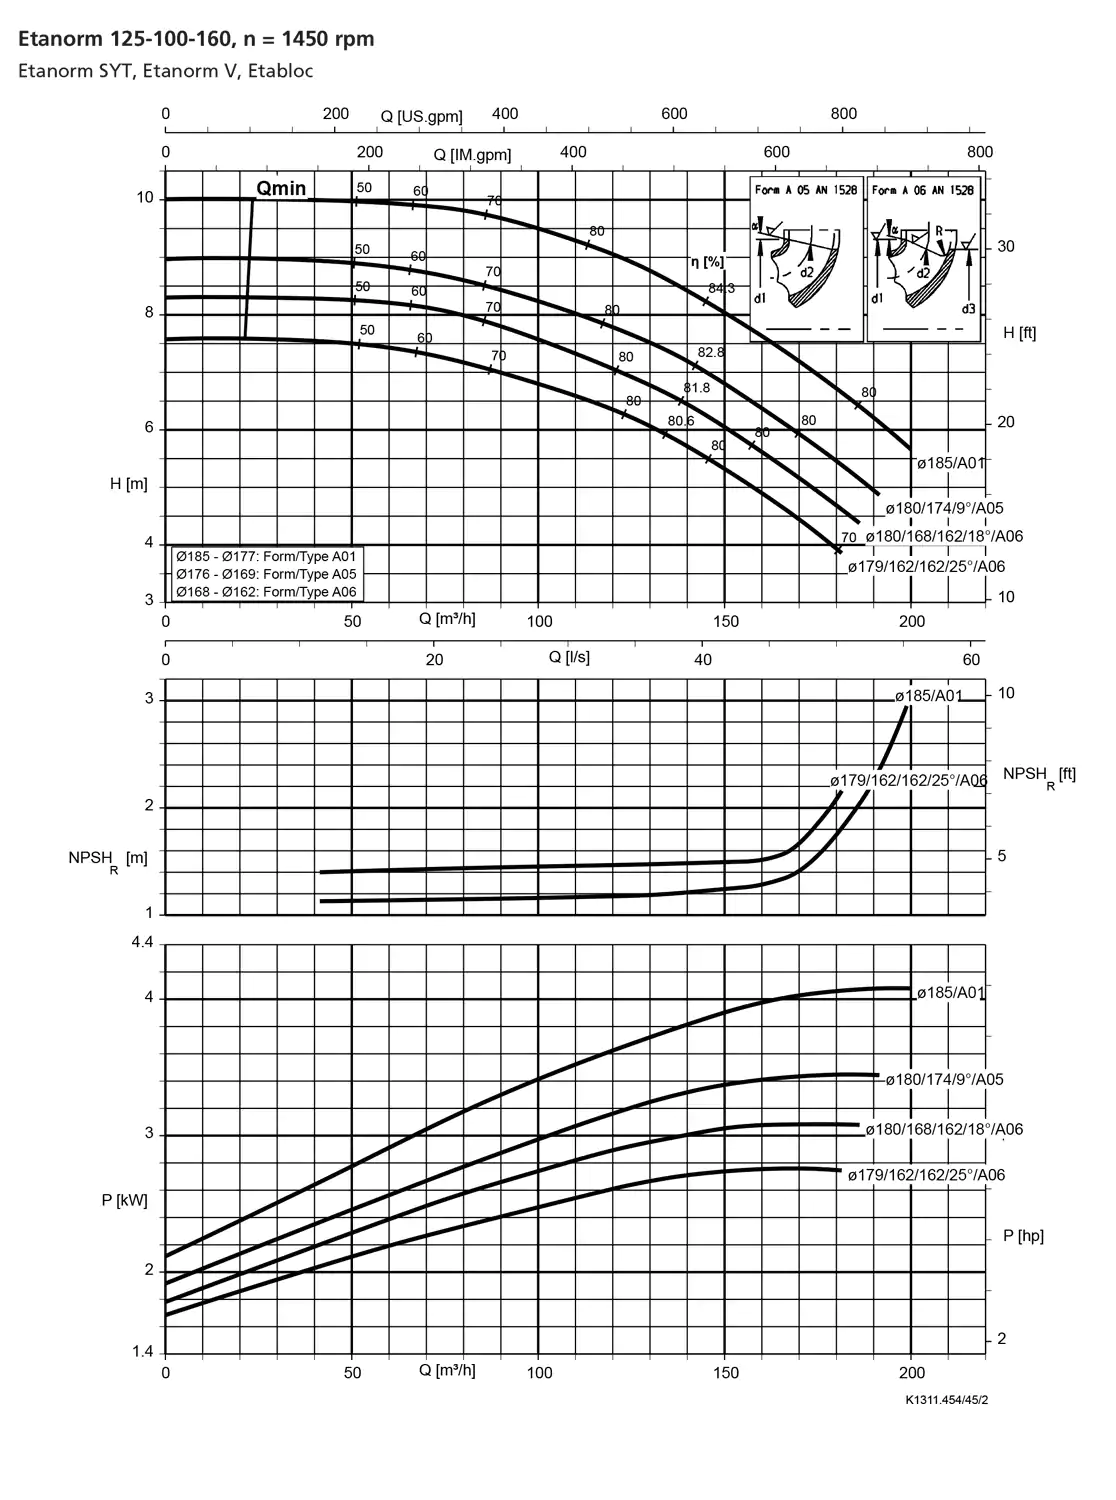 نمودار-کارکرد-پمپ-etanorm-syt-125-100-160-1450